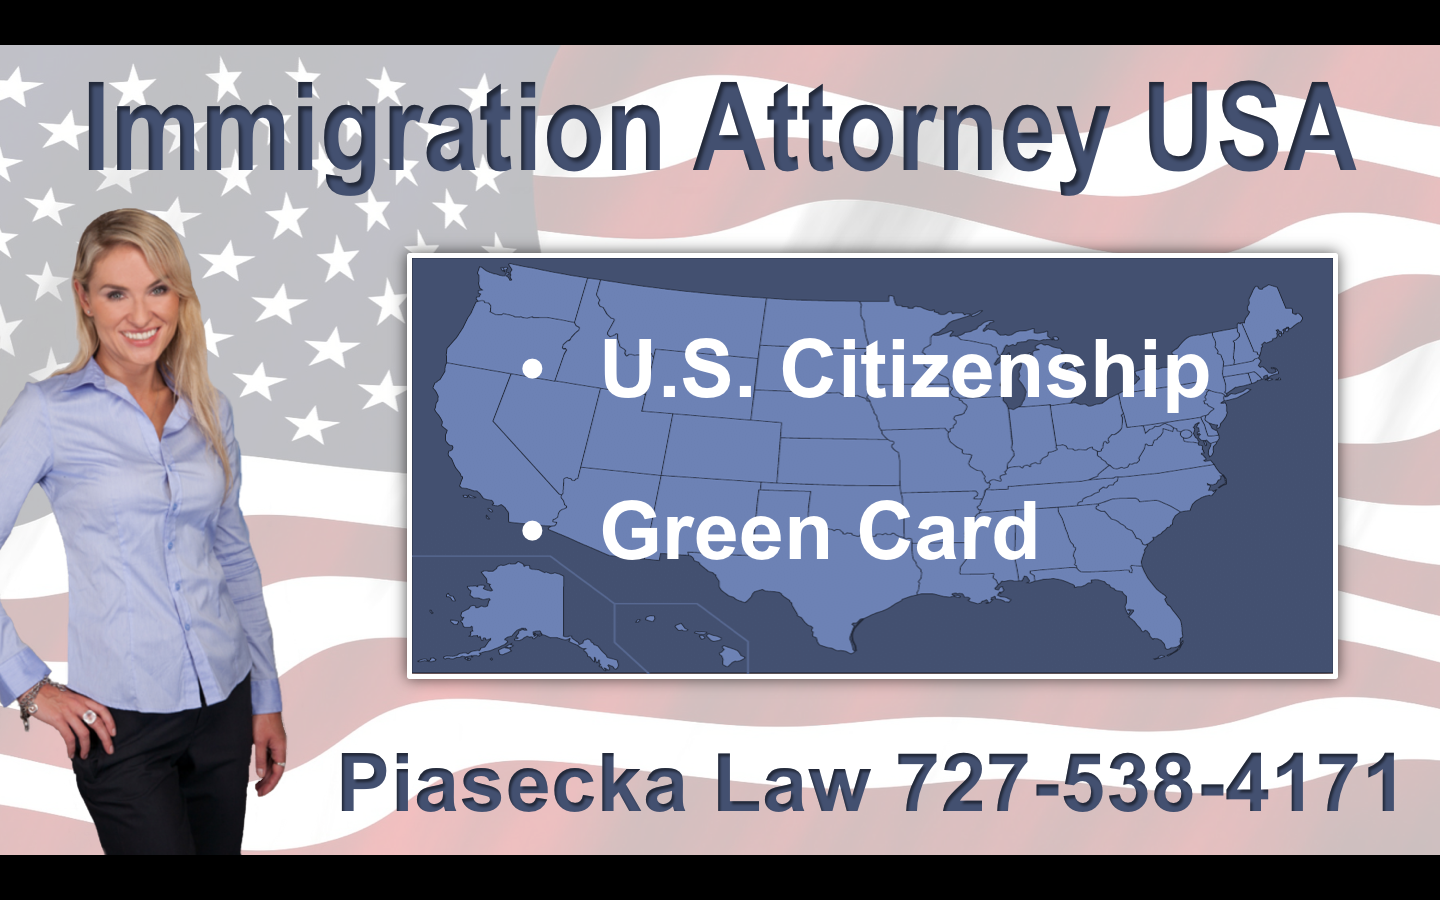 Immigration-Attorney-USA-Attorney-Agnieszka-Aga-Piasecka